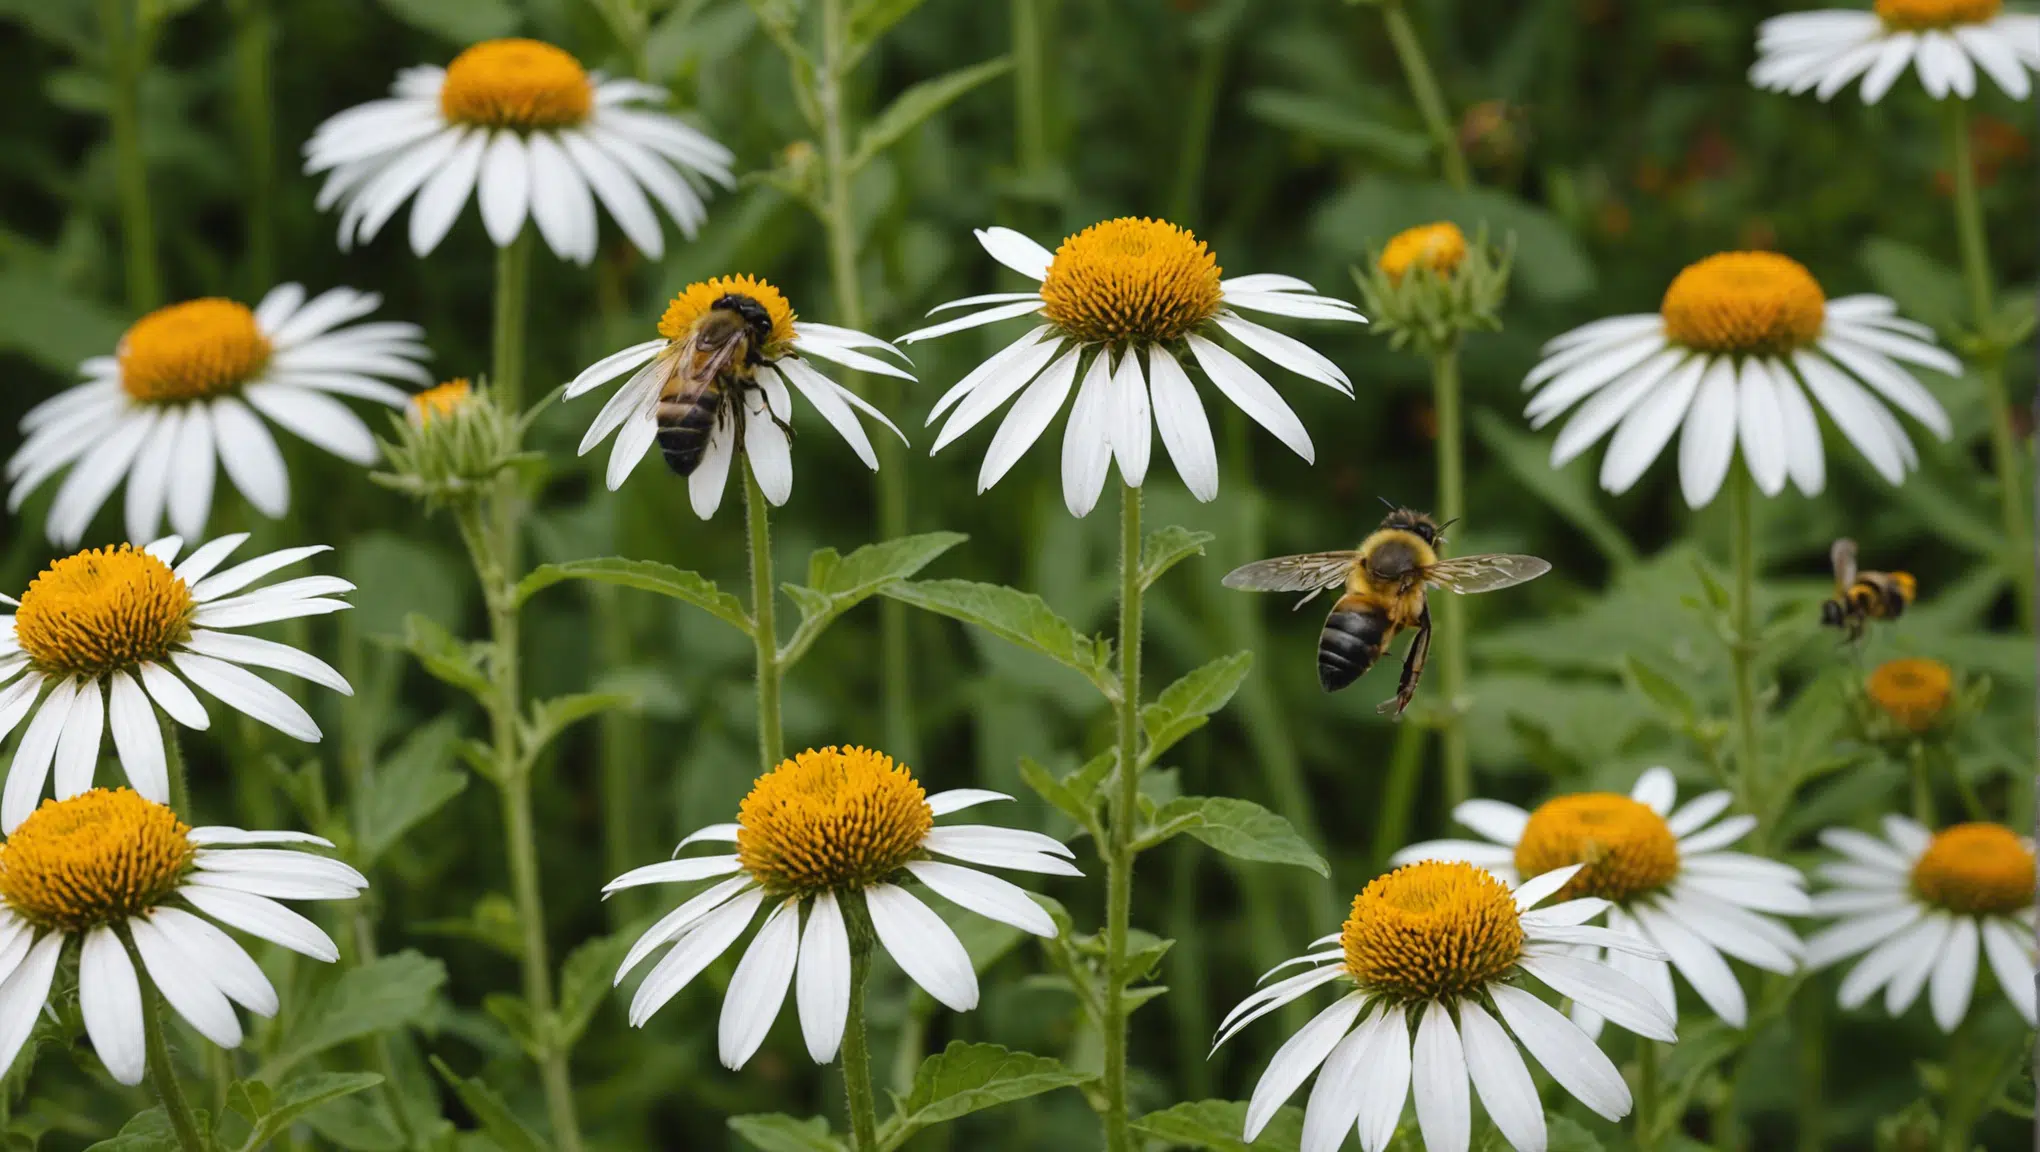 découvrez des astuces simples pour améliorer la pollinisation au jardin et favoriser la croissance de vos plantes. conseils pratiques pour attirer les pollinisateurs naturels dans votre espace vert.